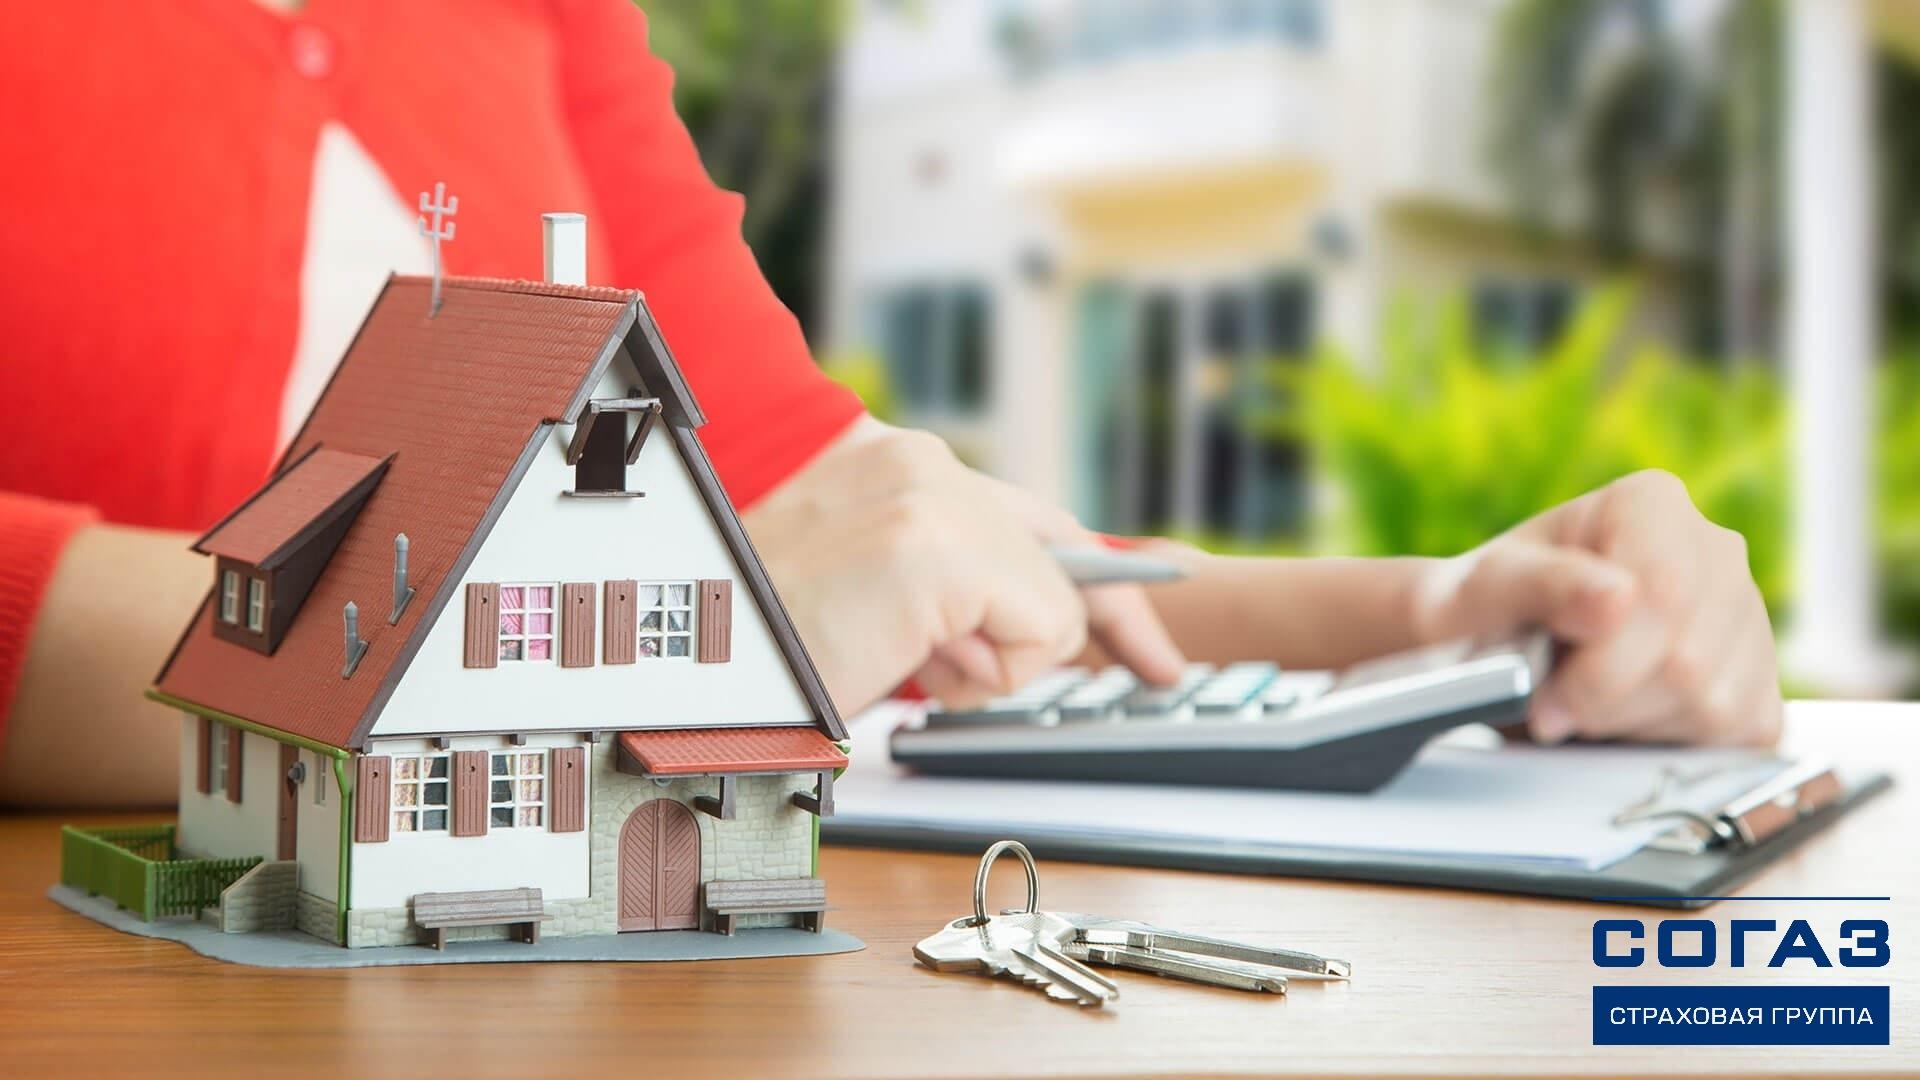 Ипотечное страхование в АО «СОГАЗ»: онлайн калькулятор, отзывы клиентов, полис для дома и квартиры